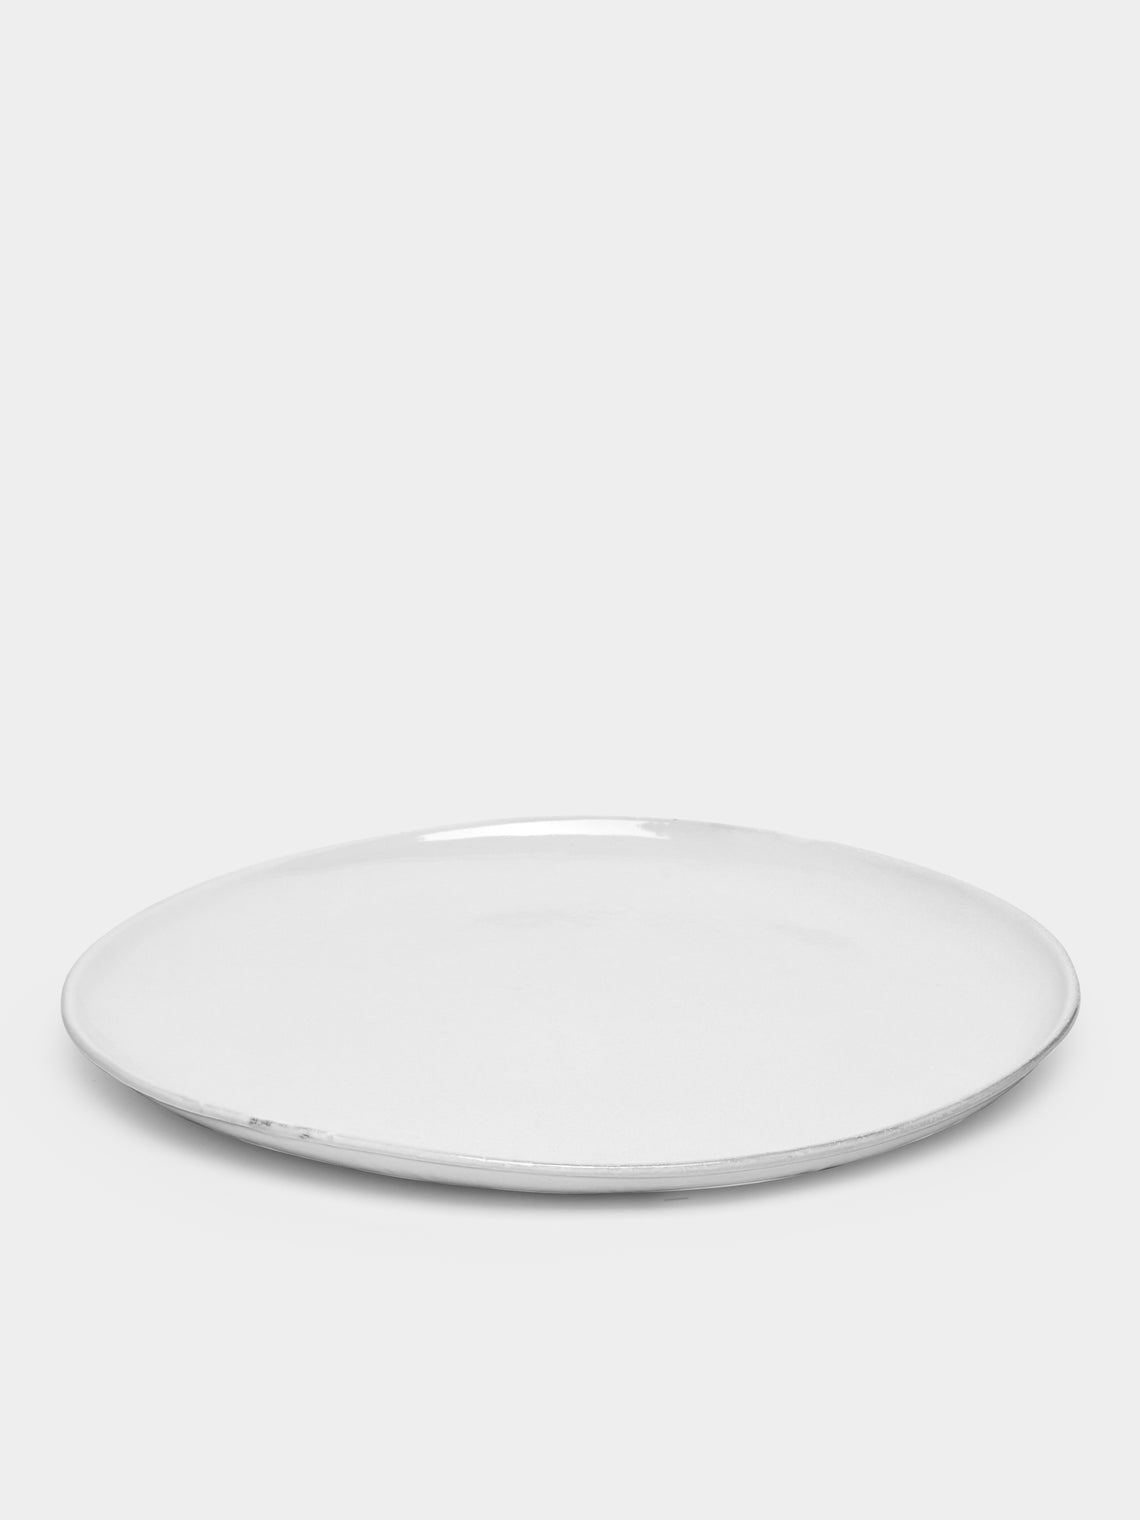 Astier de Villatte - Rien Large Plate -  - ABASK